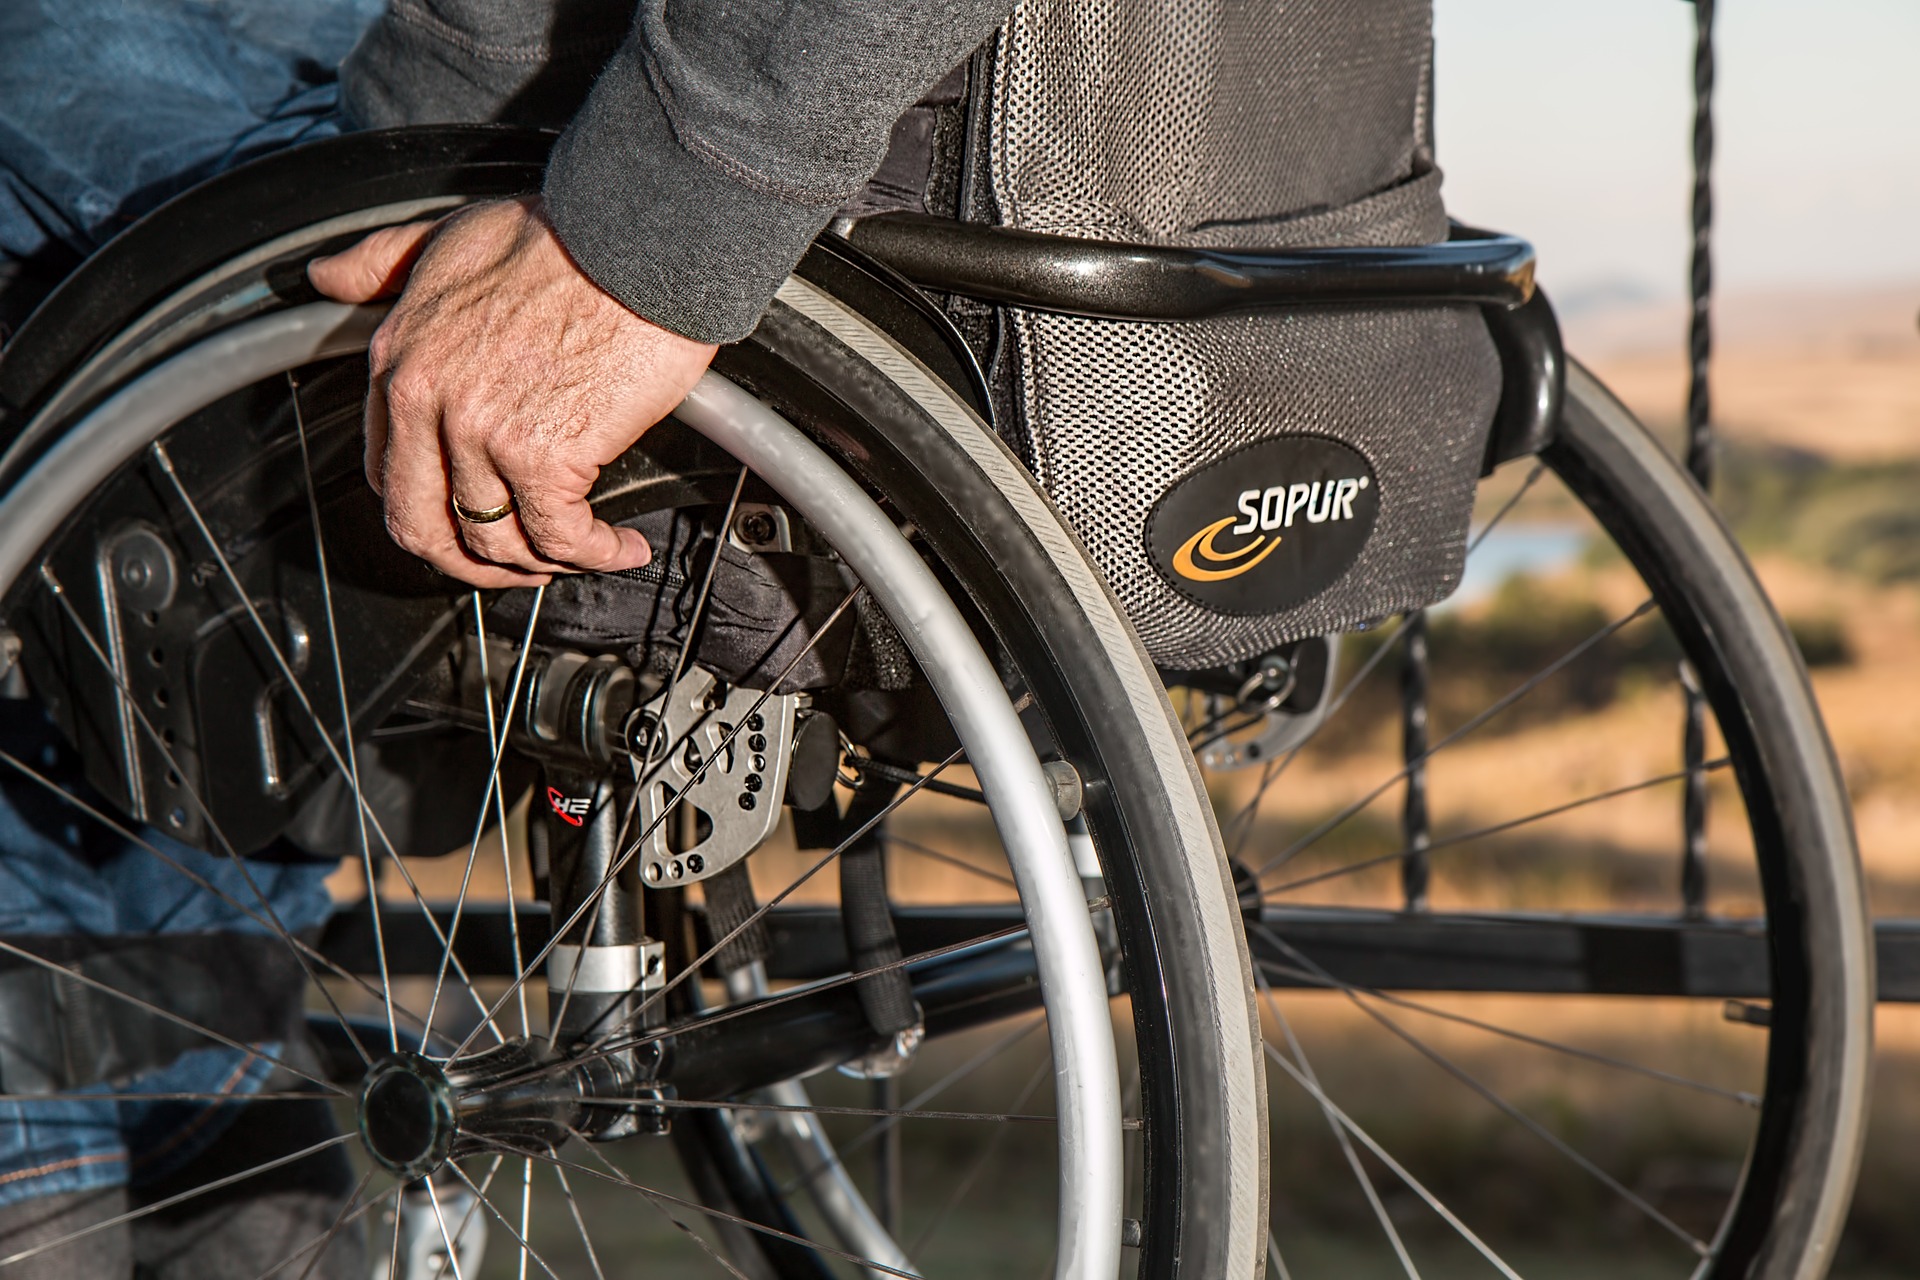 Rollstuhl mit SOPUR logo